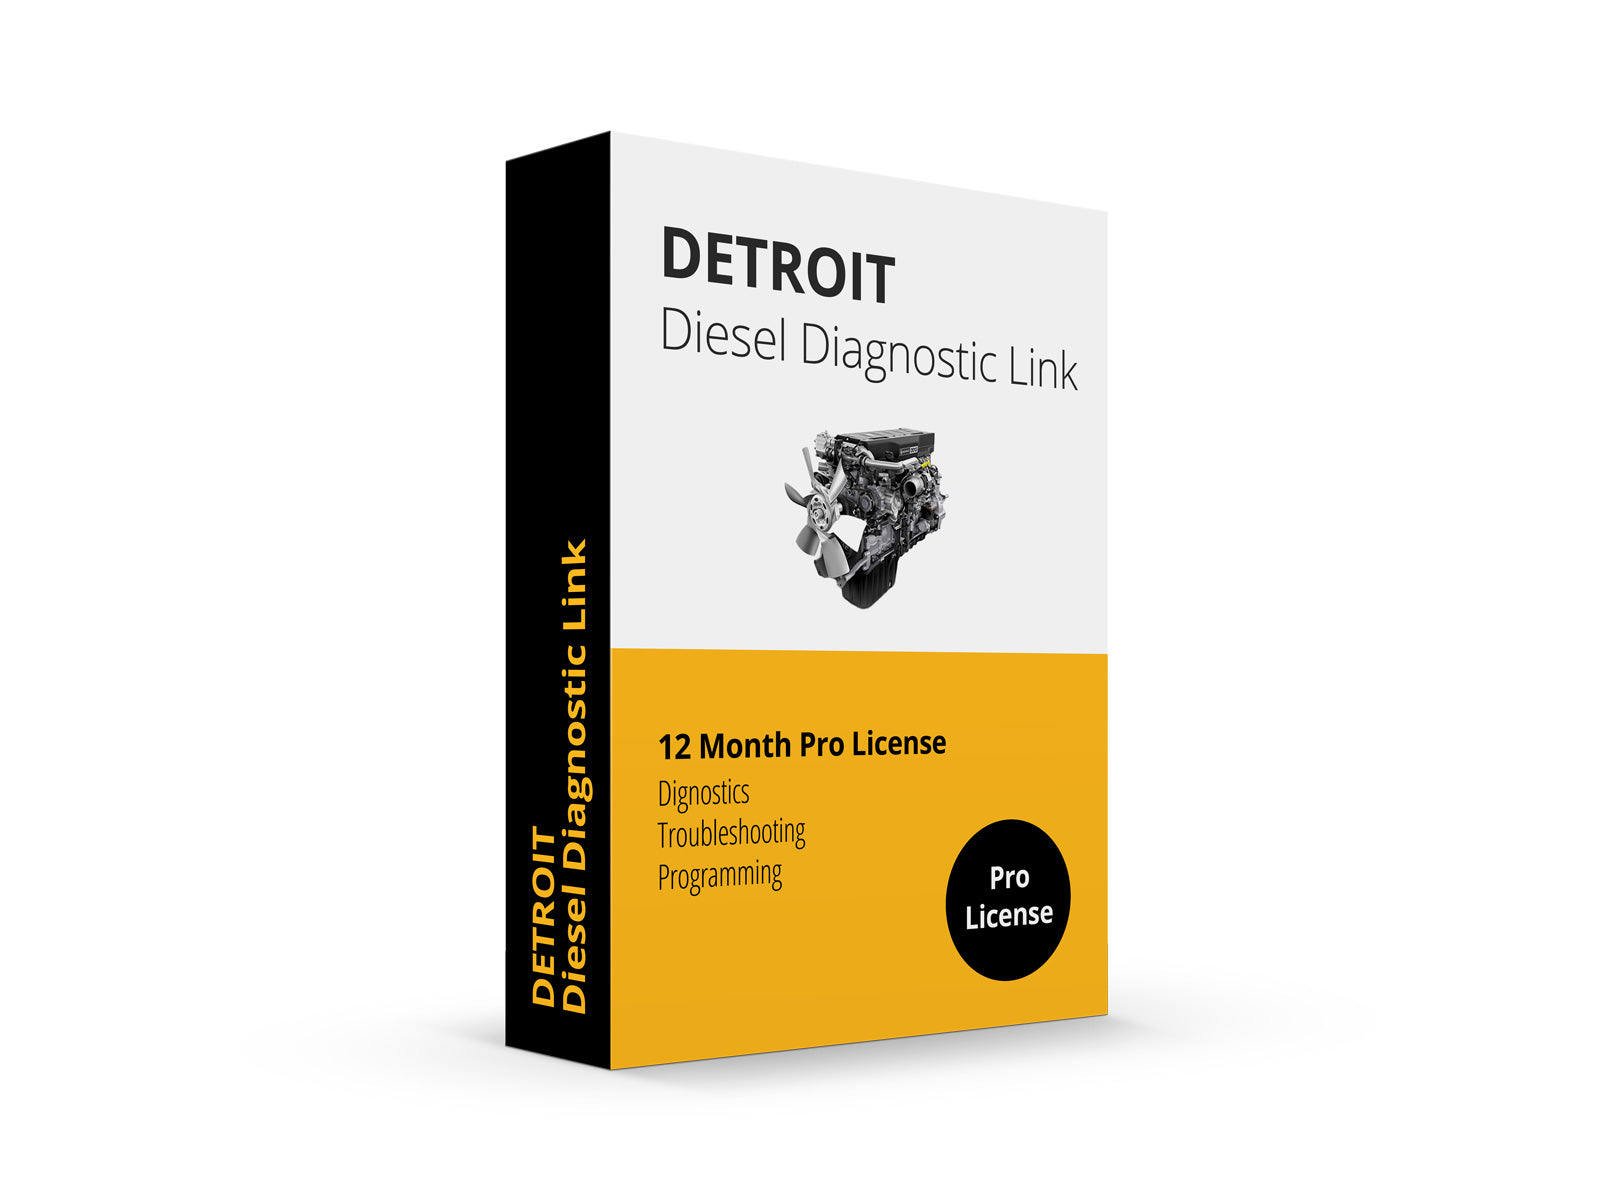 Detroit Diesel Diagnostic Link v8 & v6 Combo Pro Edition - 12 Month License